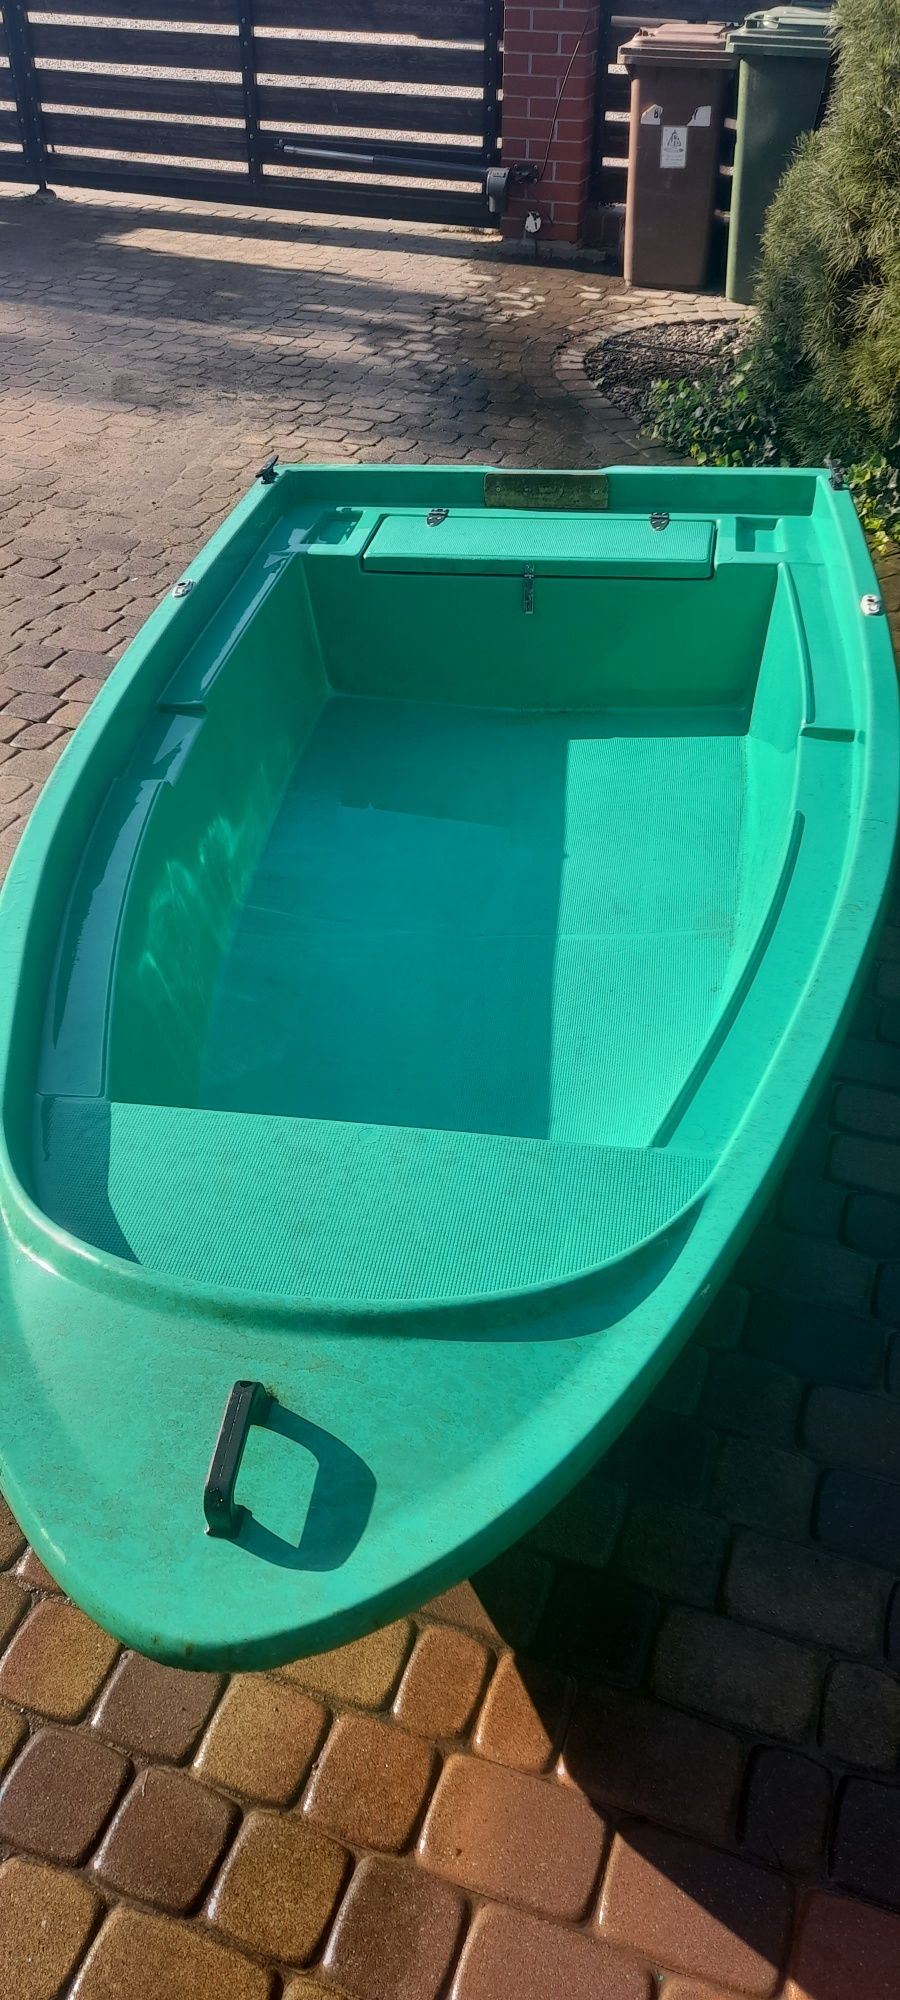 Norton łódka, łódź, wiosłowa, wędkarska 280 cm/130 cm. Cena wiosenna.